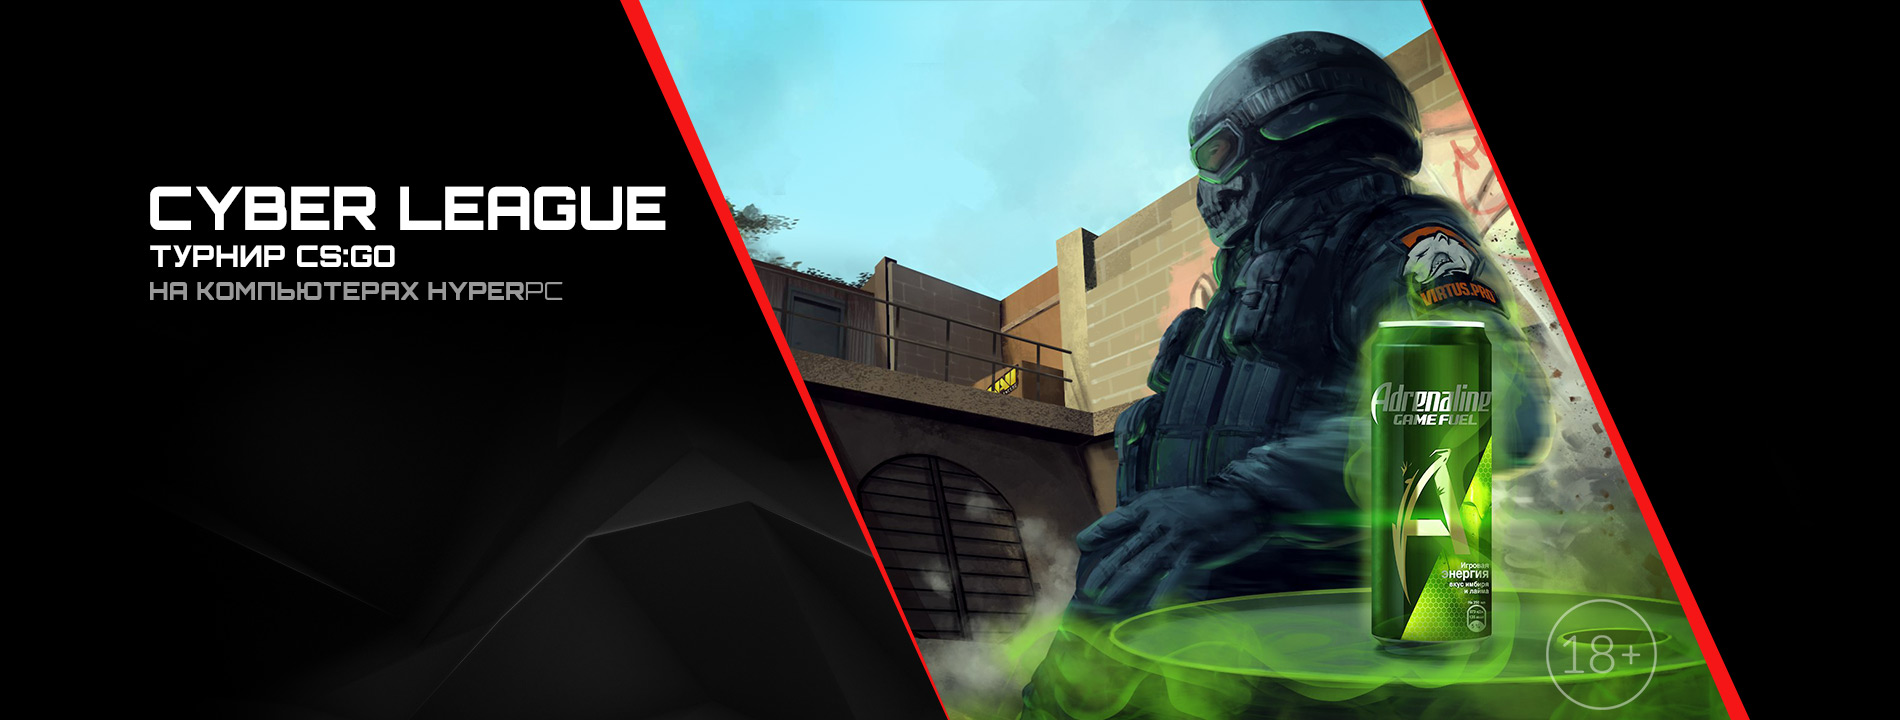 HYPERPC - официальный технический партнер Adrenaline Cyber League 2018: Counter Strike Global Offensive